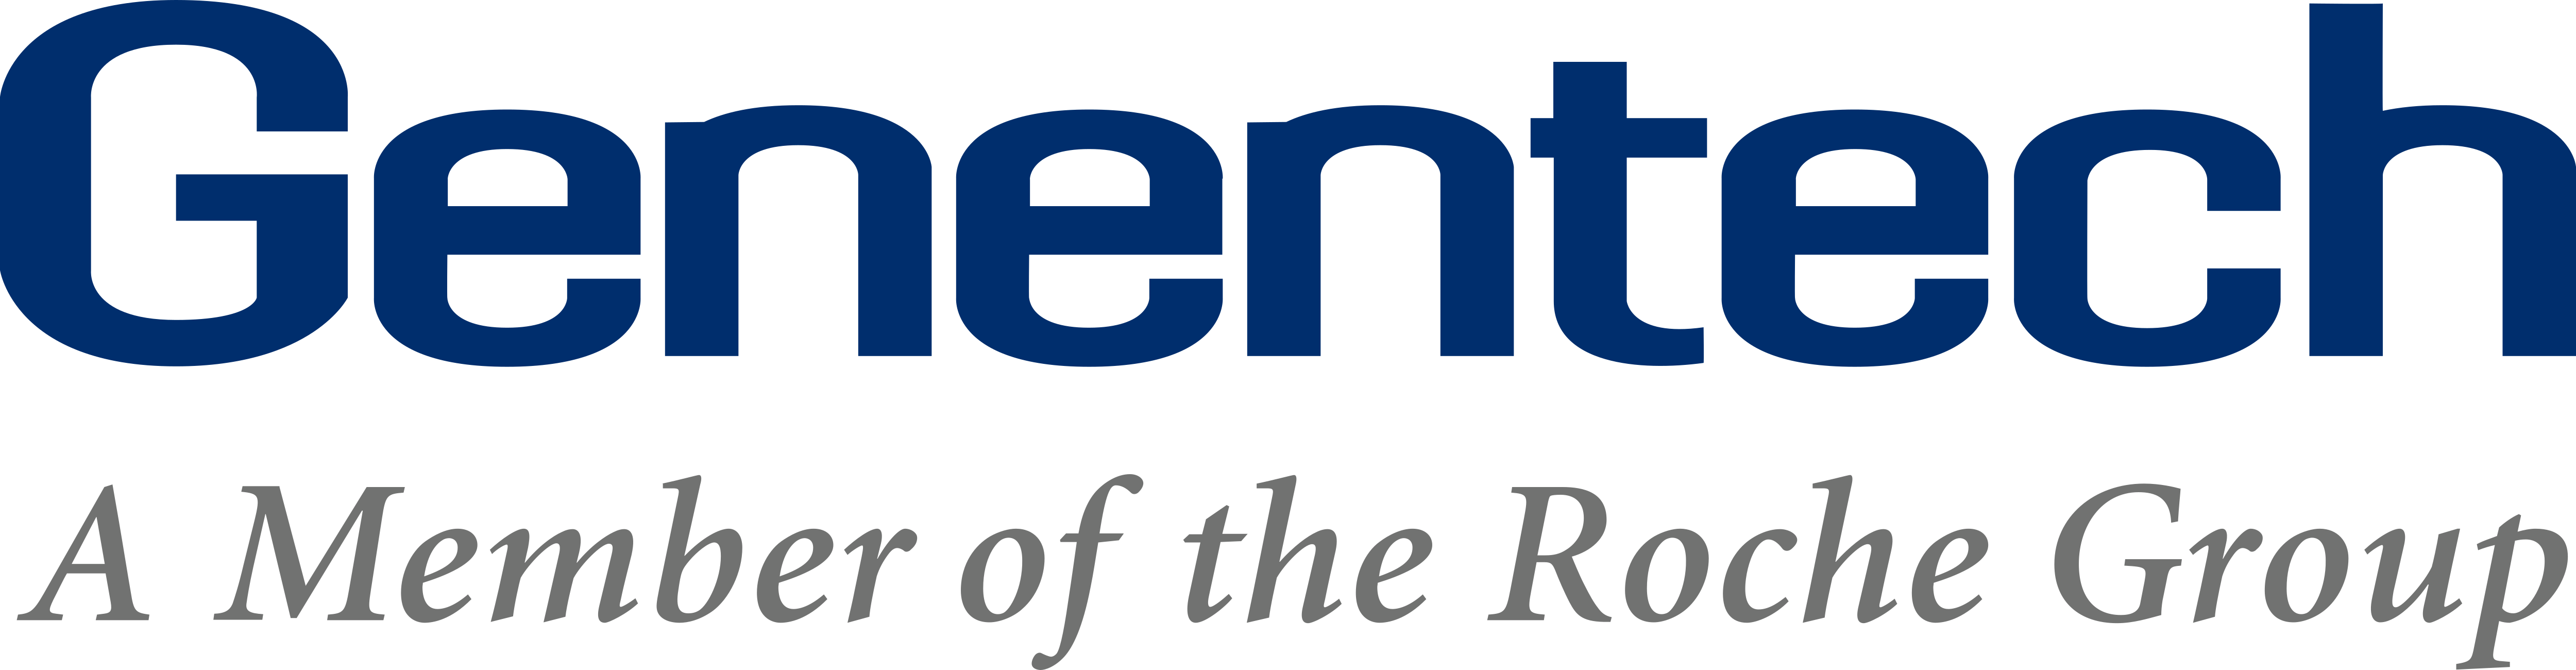 Genentech_Logo